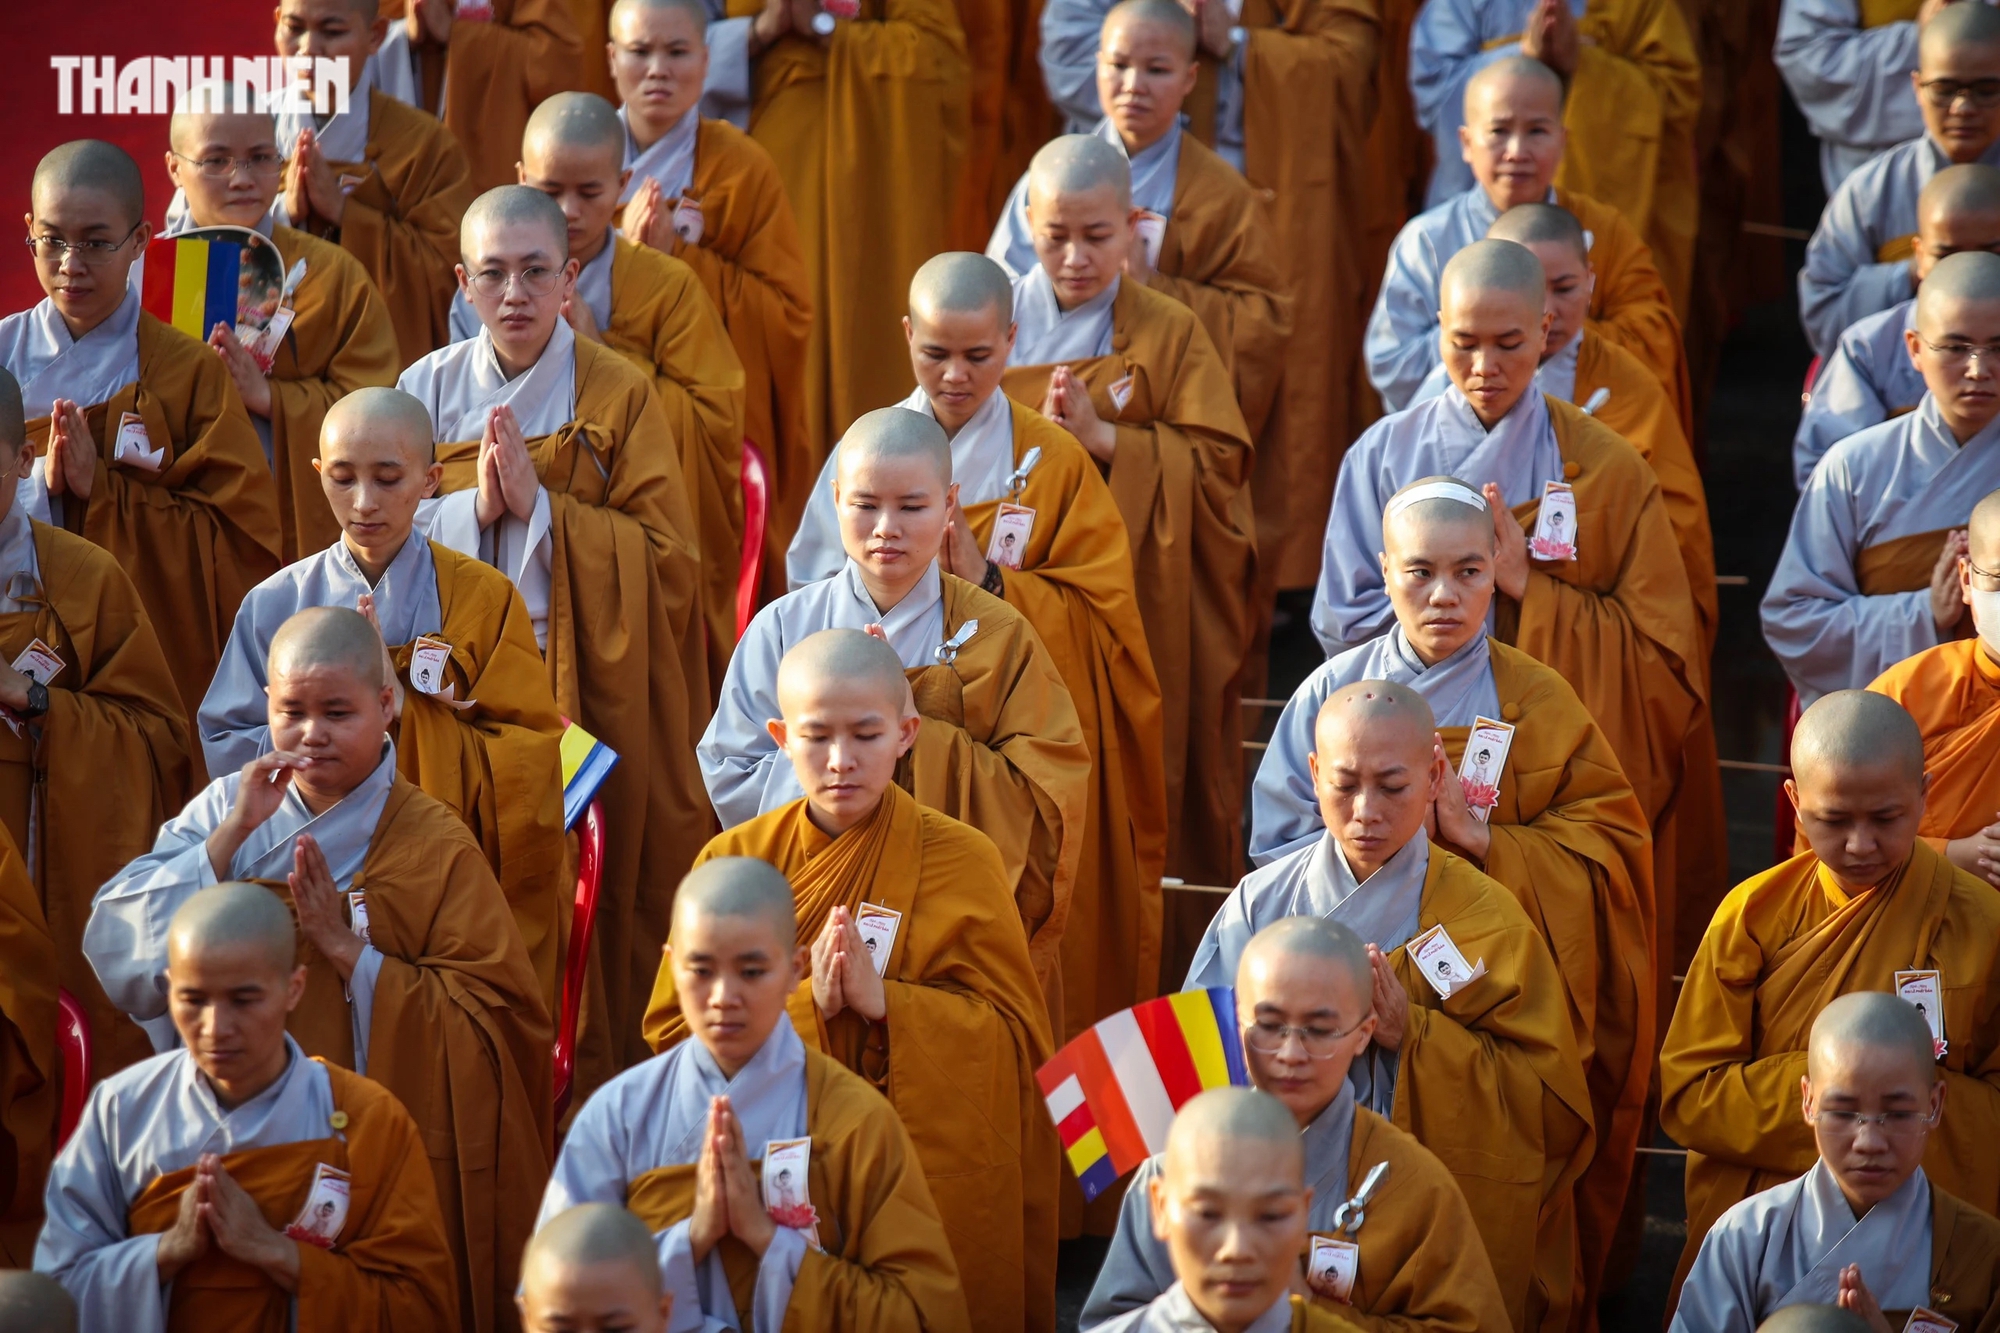 Đại lễ Phật đản hay ngày Tam hợp - Kỷ niệm Đức Phật đản sanh, thành đạo và nhập Niết bàn, là dịp để chúng ta cùng nhau ôn lại cuộc đời cao thượng, những lời dạy vô ngã vị tha, đầy thương yêu và trí tuệ